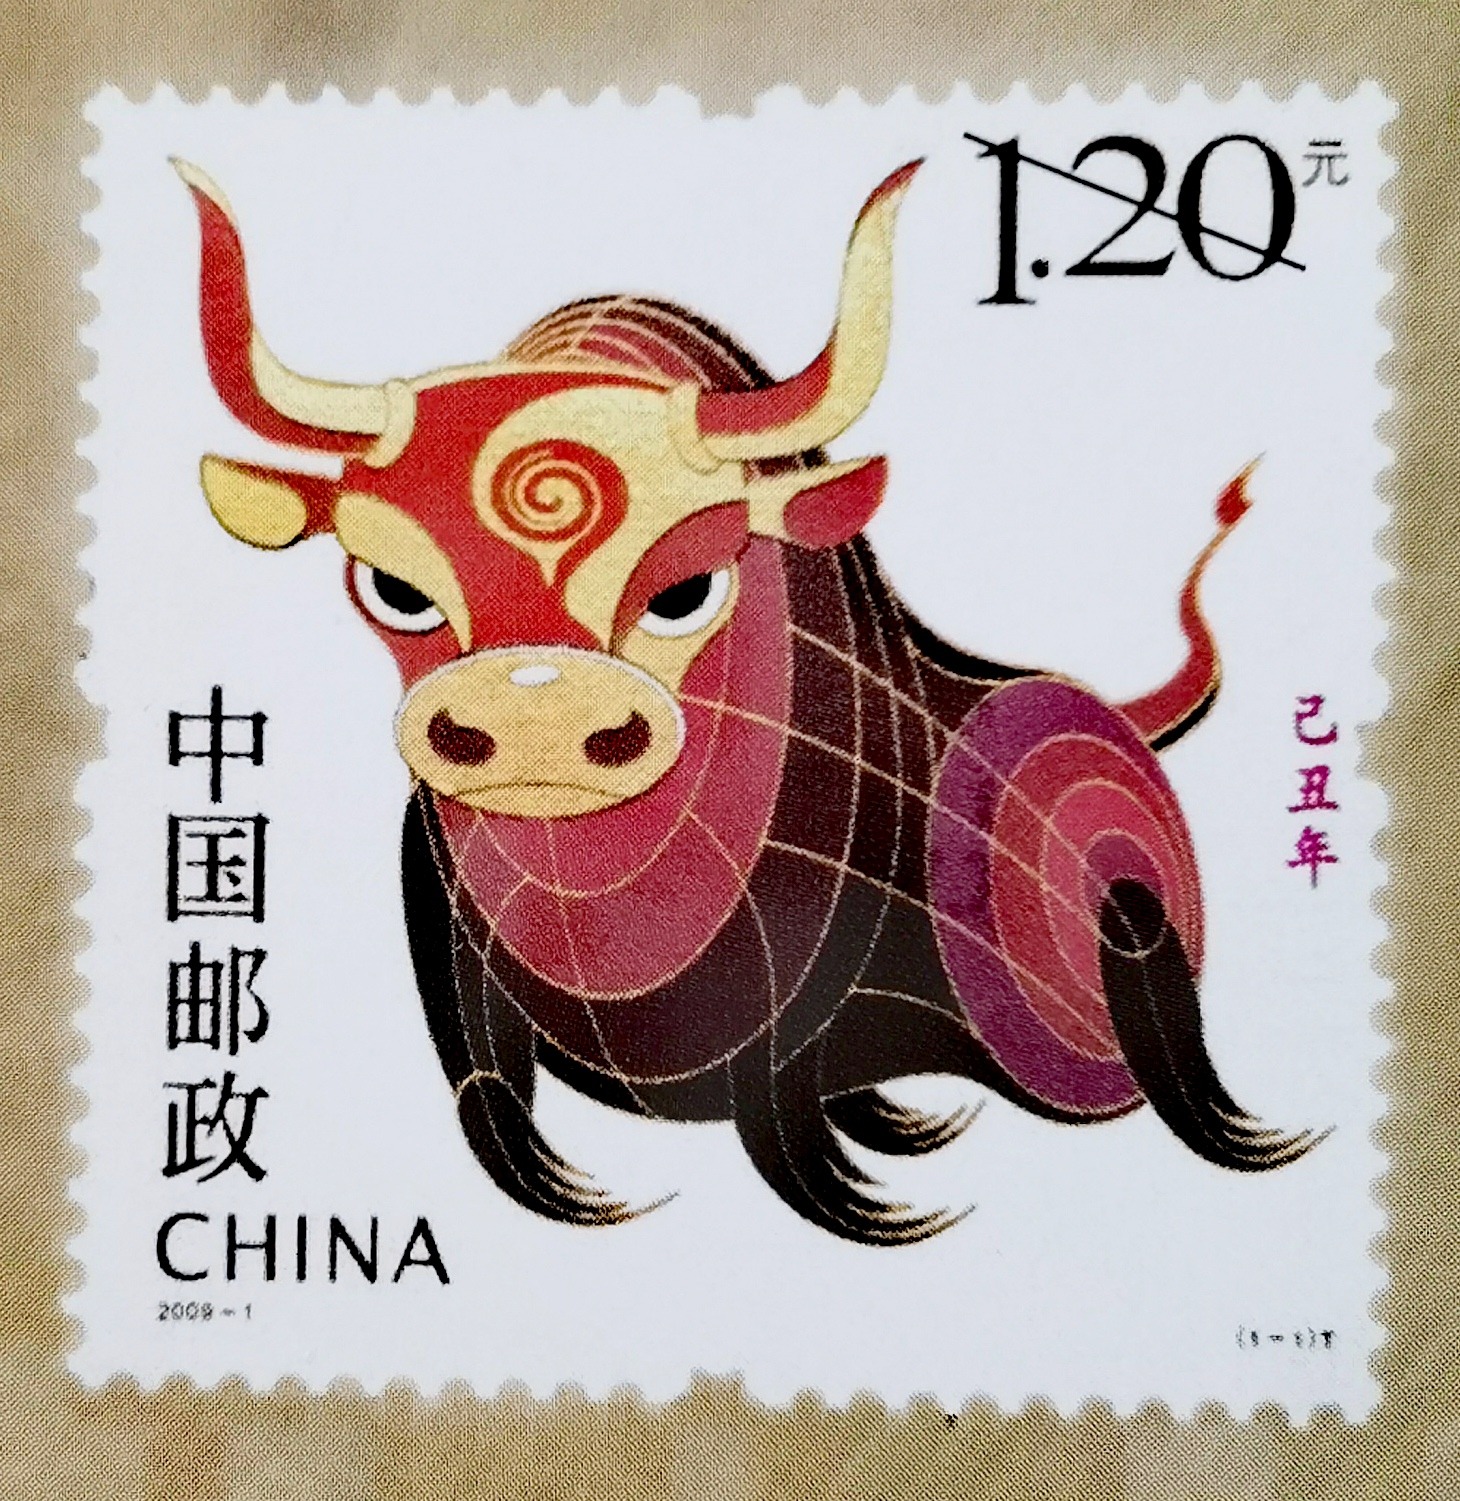 生肖牛邮票画法图片